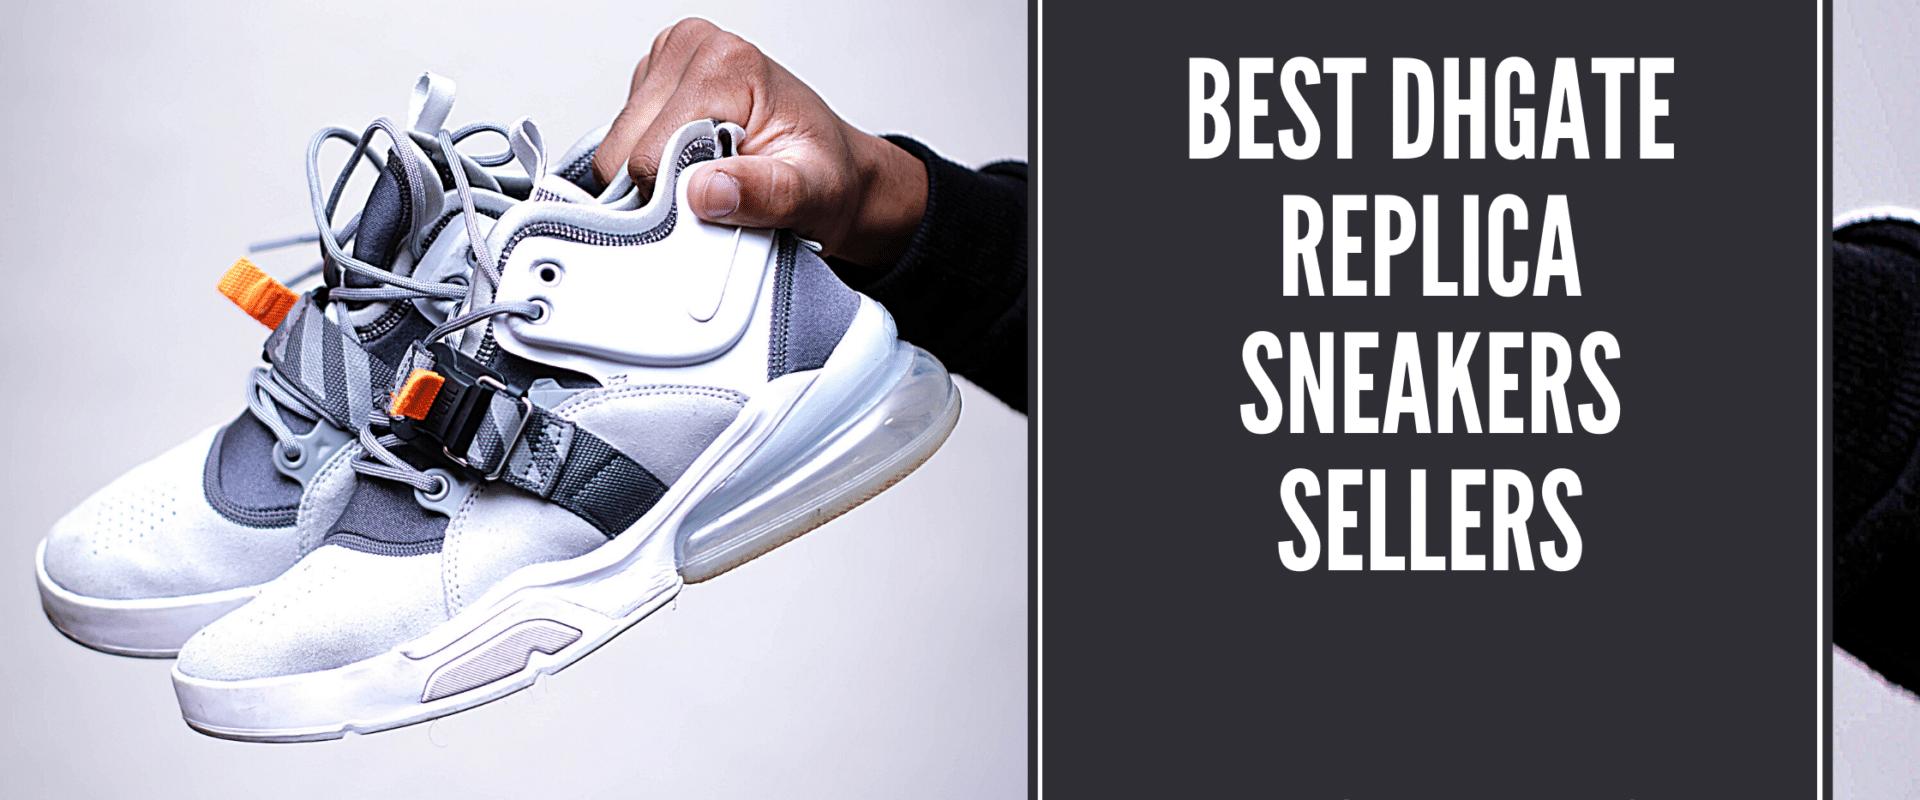 Best DHgate Replica Sneakers Sellers